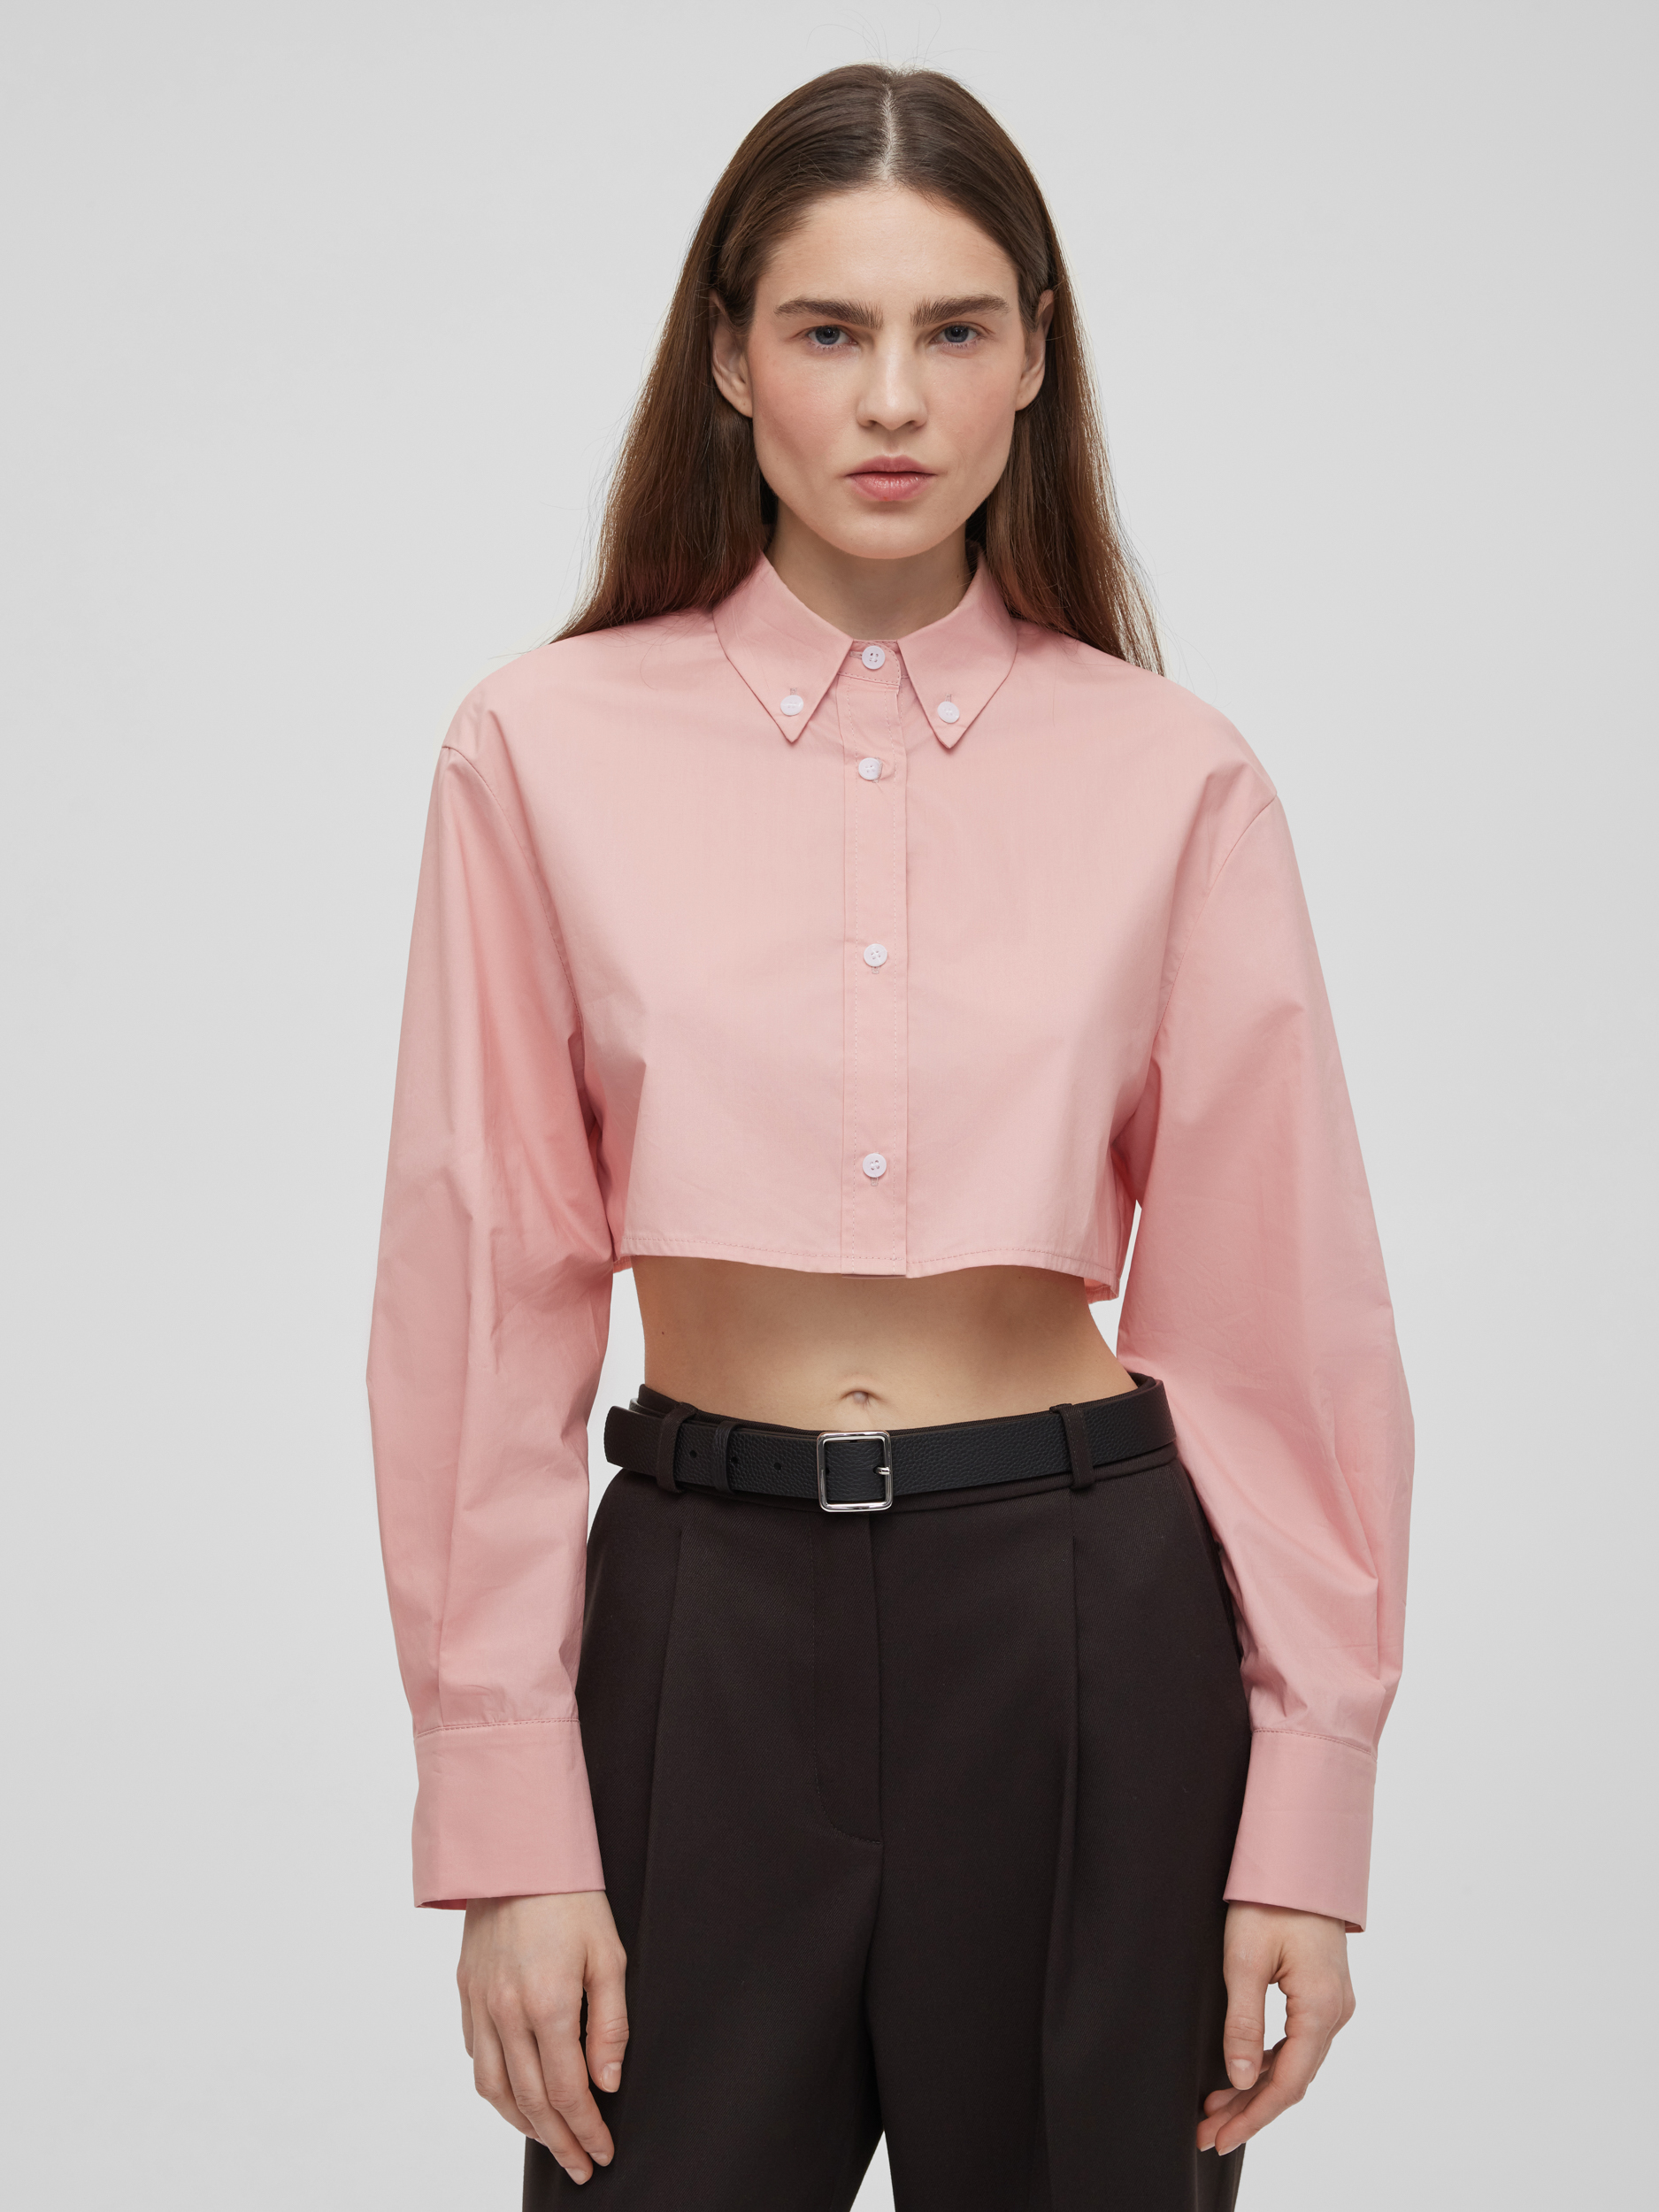 Рубашка женская короткая из хлопка, цвет – розовый 27724